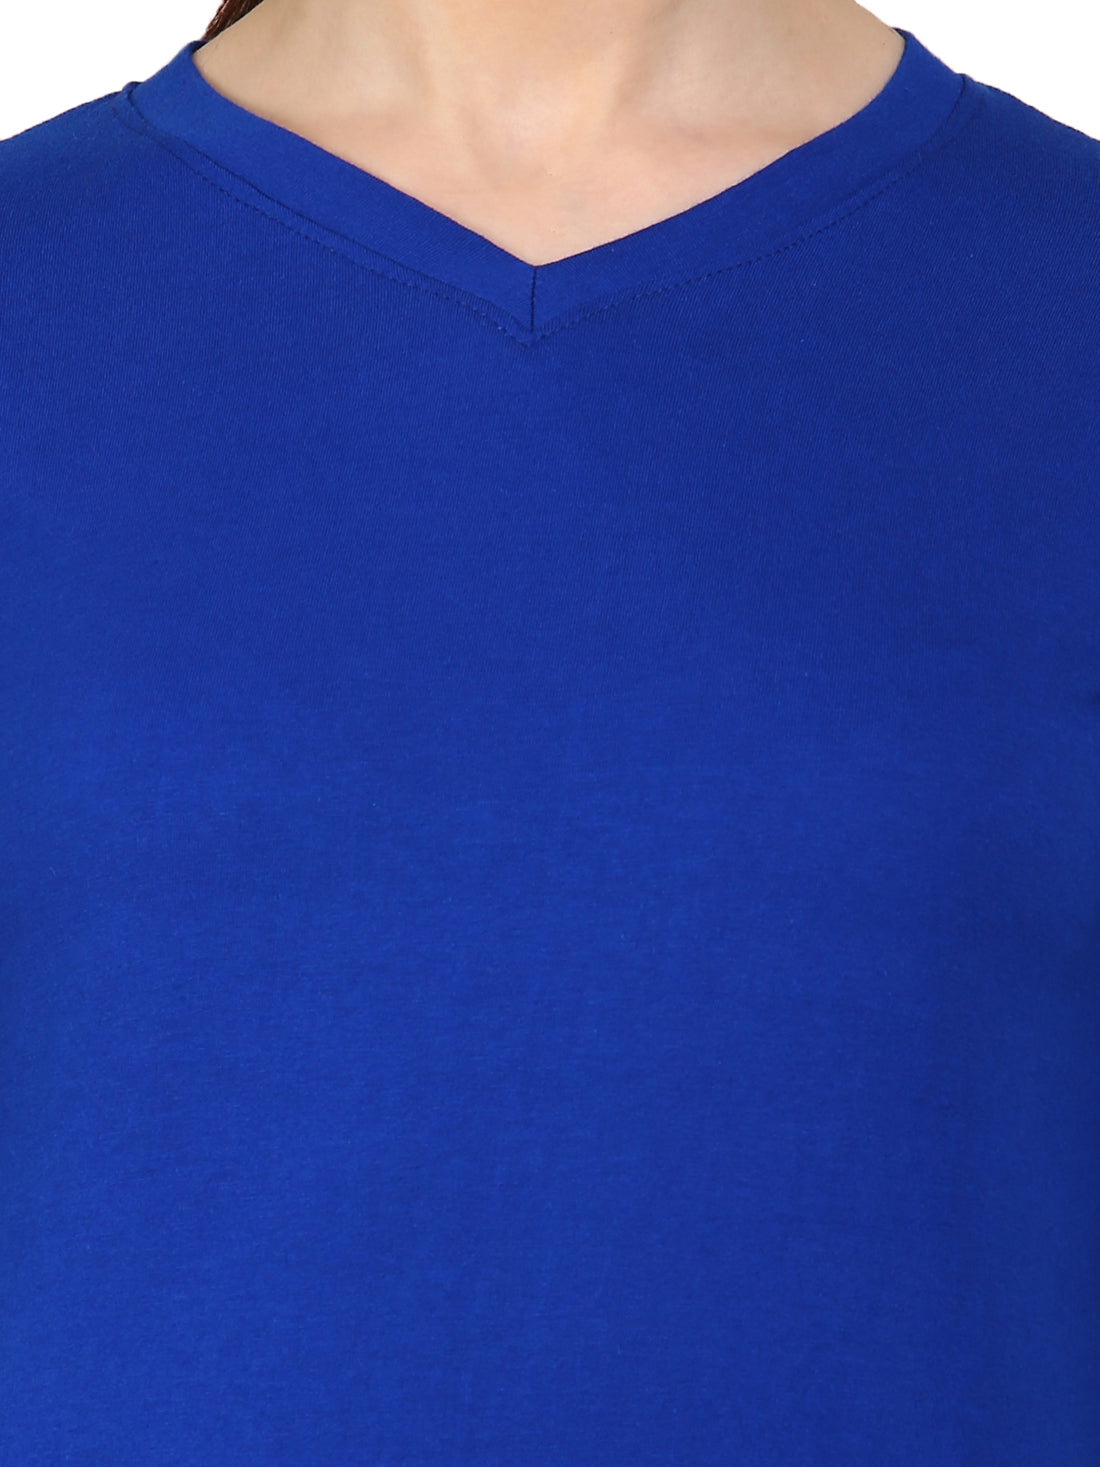 Ap'pulse Women's Long Sleeve V neck Tshirt